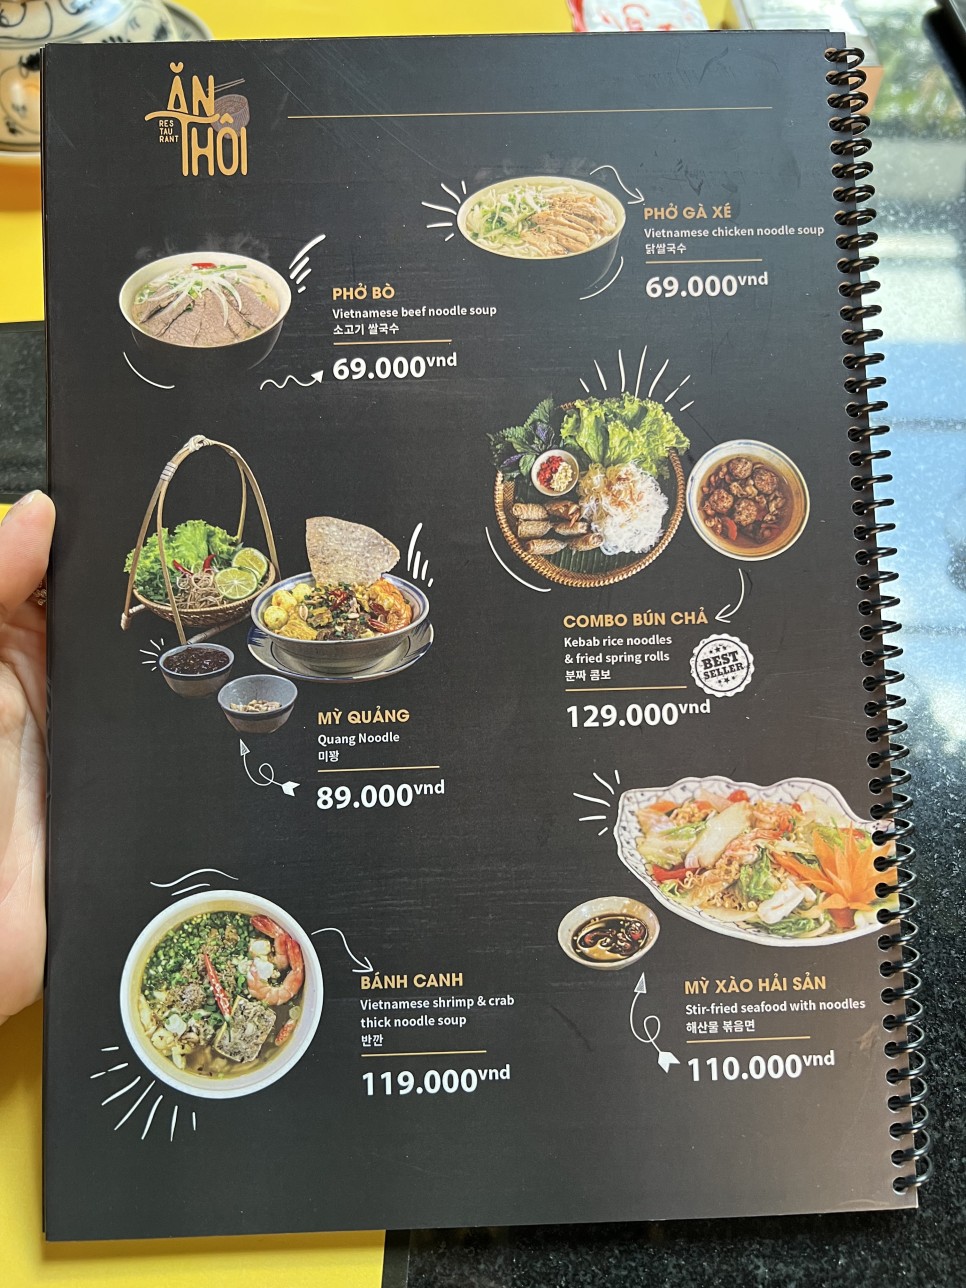 베트남 나트랑 맛집 안토이 베트남 음식 종류별로!